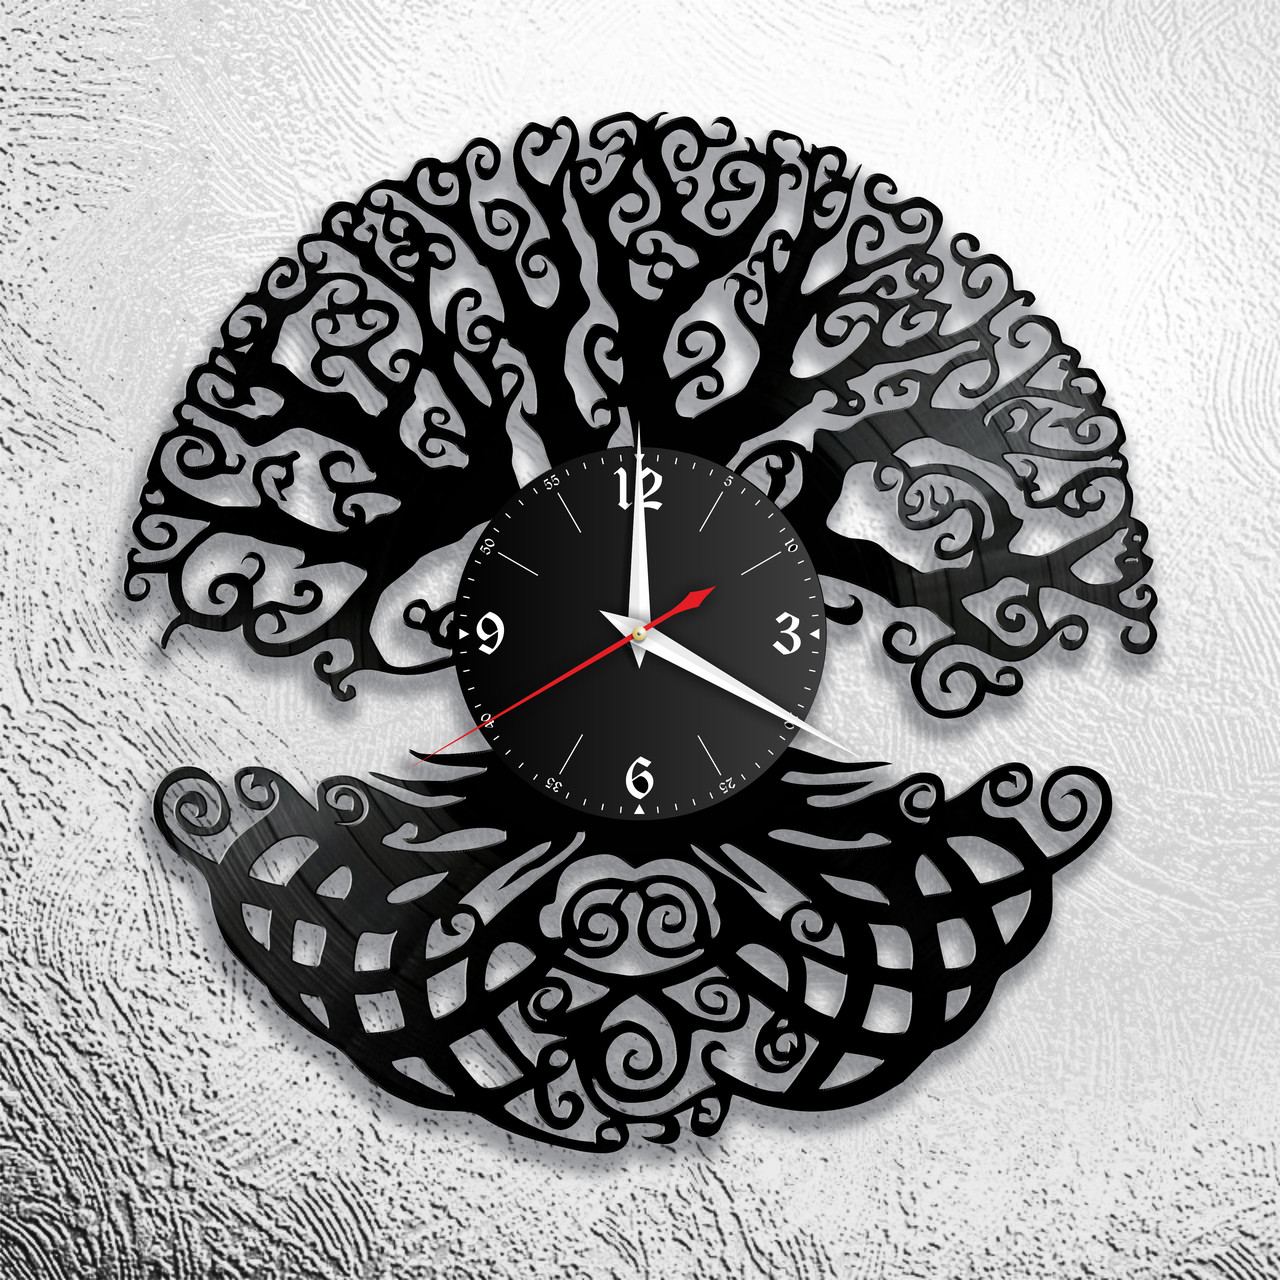 Оригинальные часы из виниловых пластинок "Дерево Жизни" Версия 1, фото 1